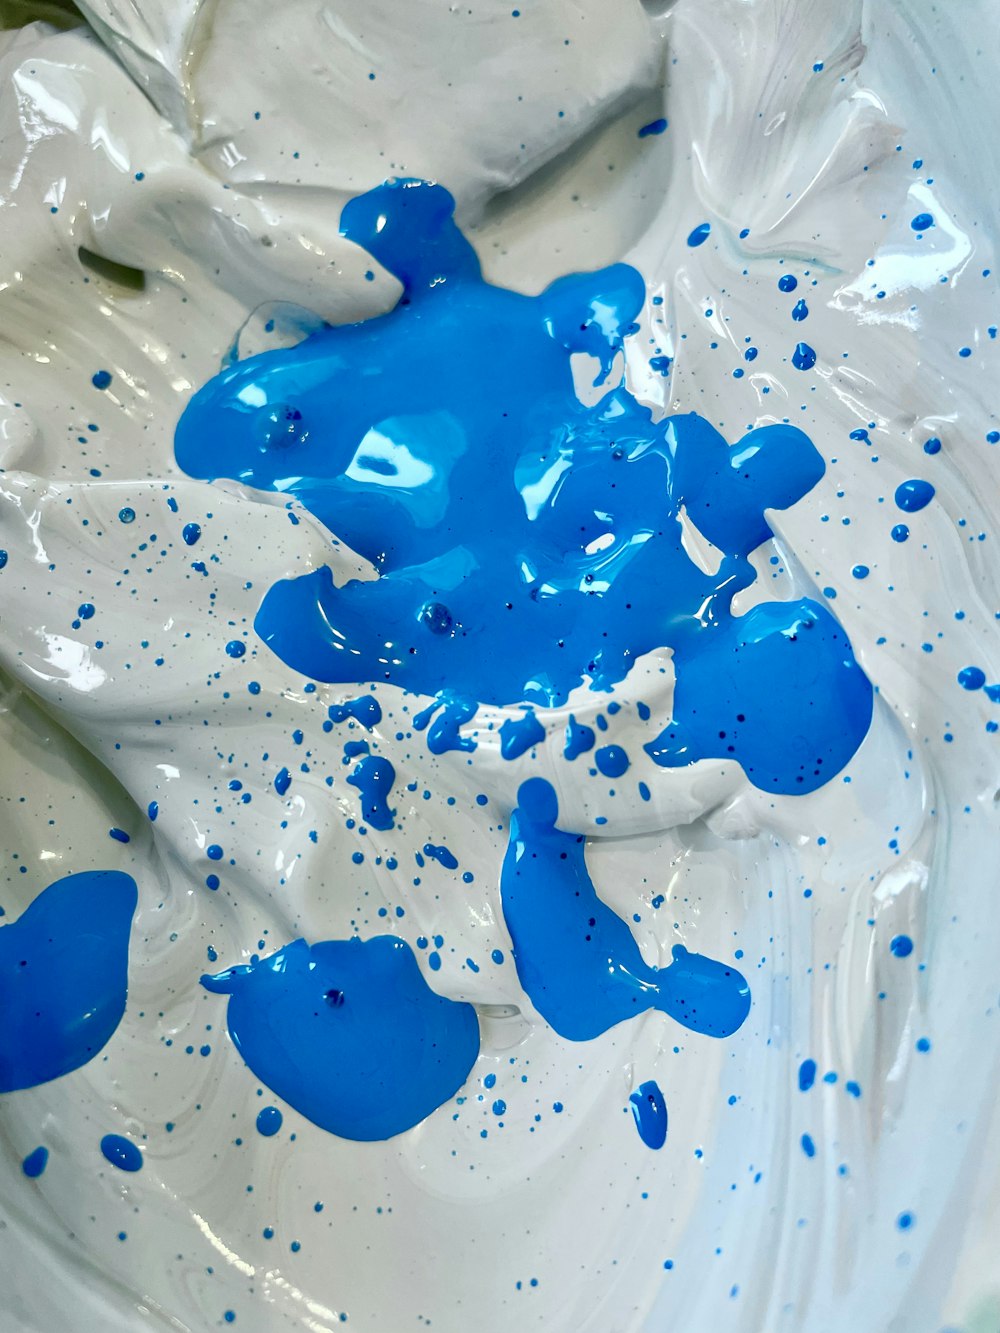 La peinture bleue et blanche est dans un bol